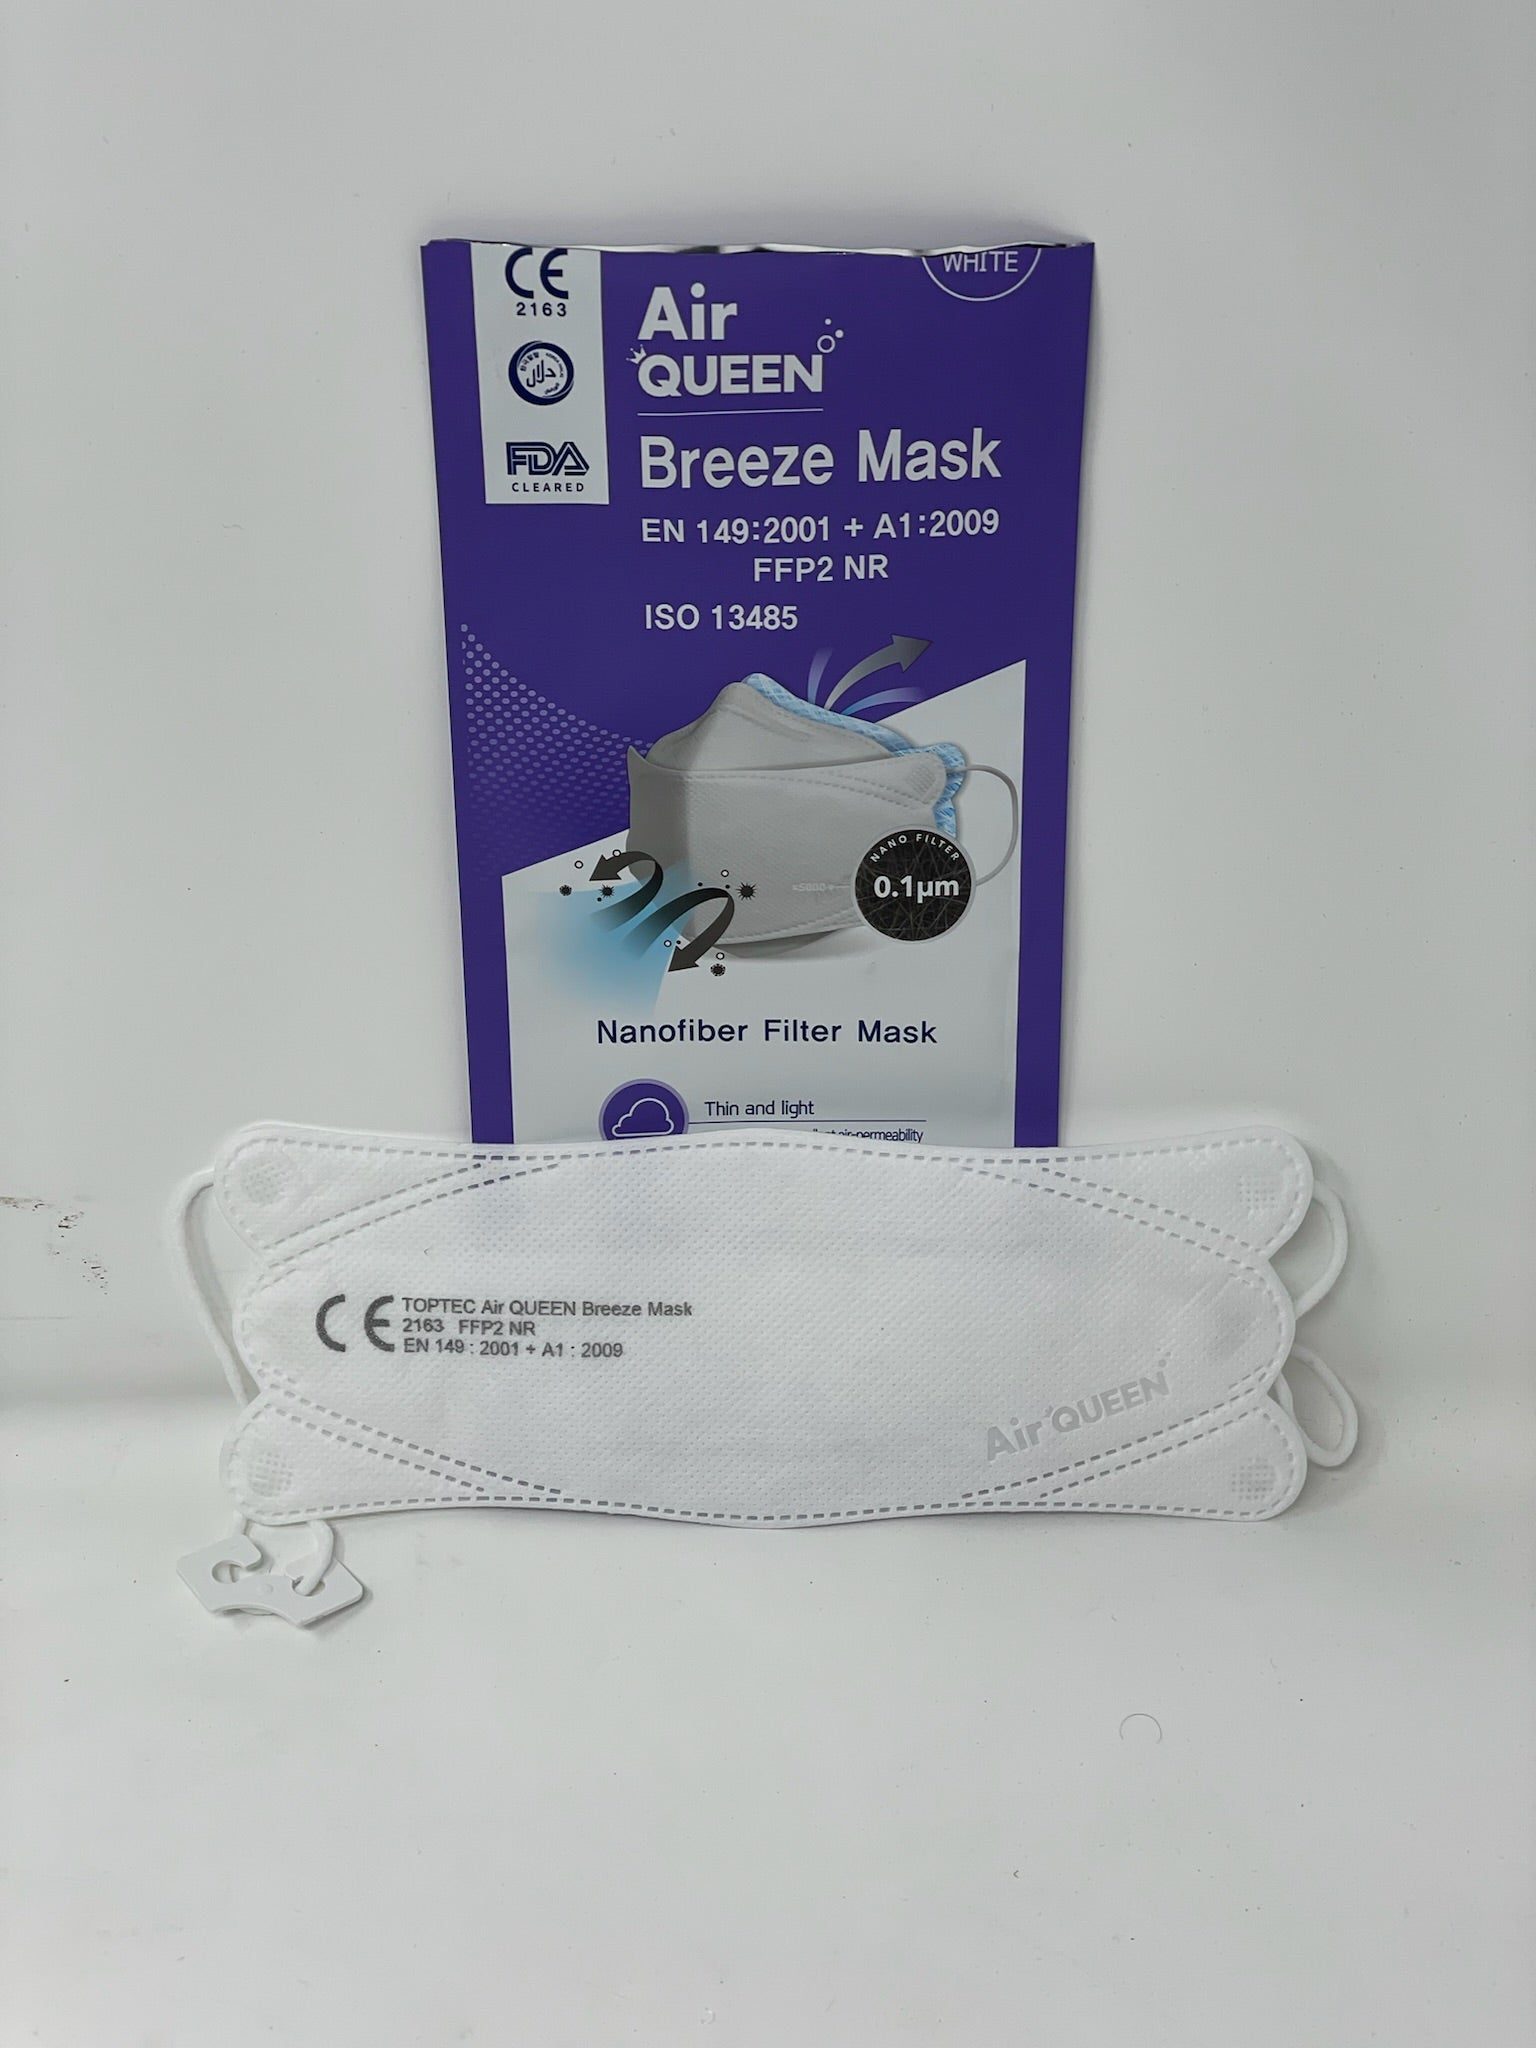 Air Queen Breeze Mask